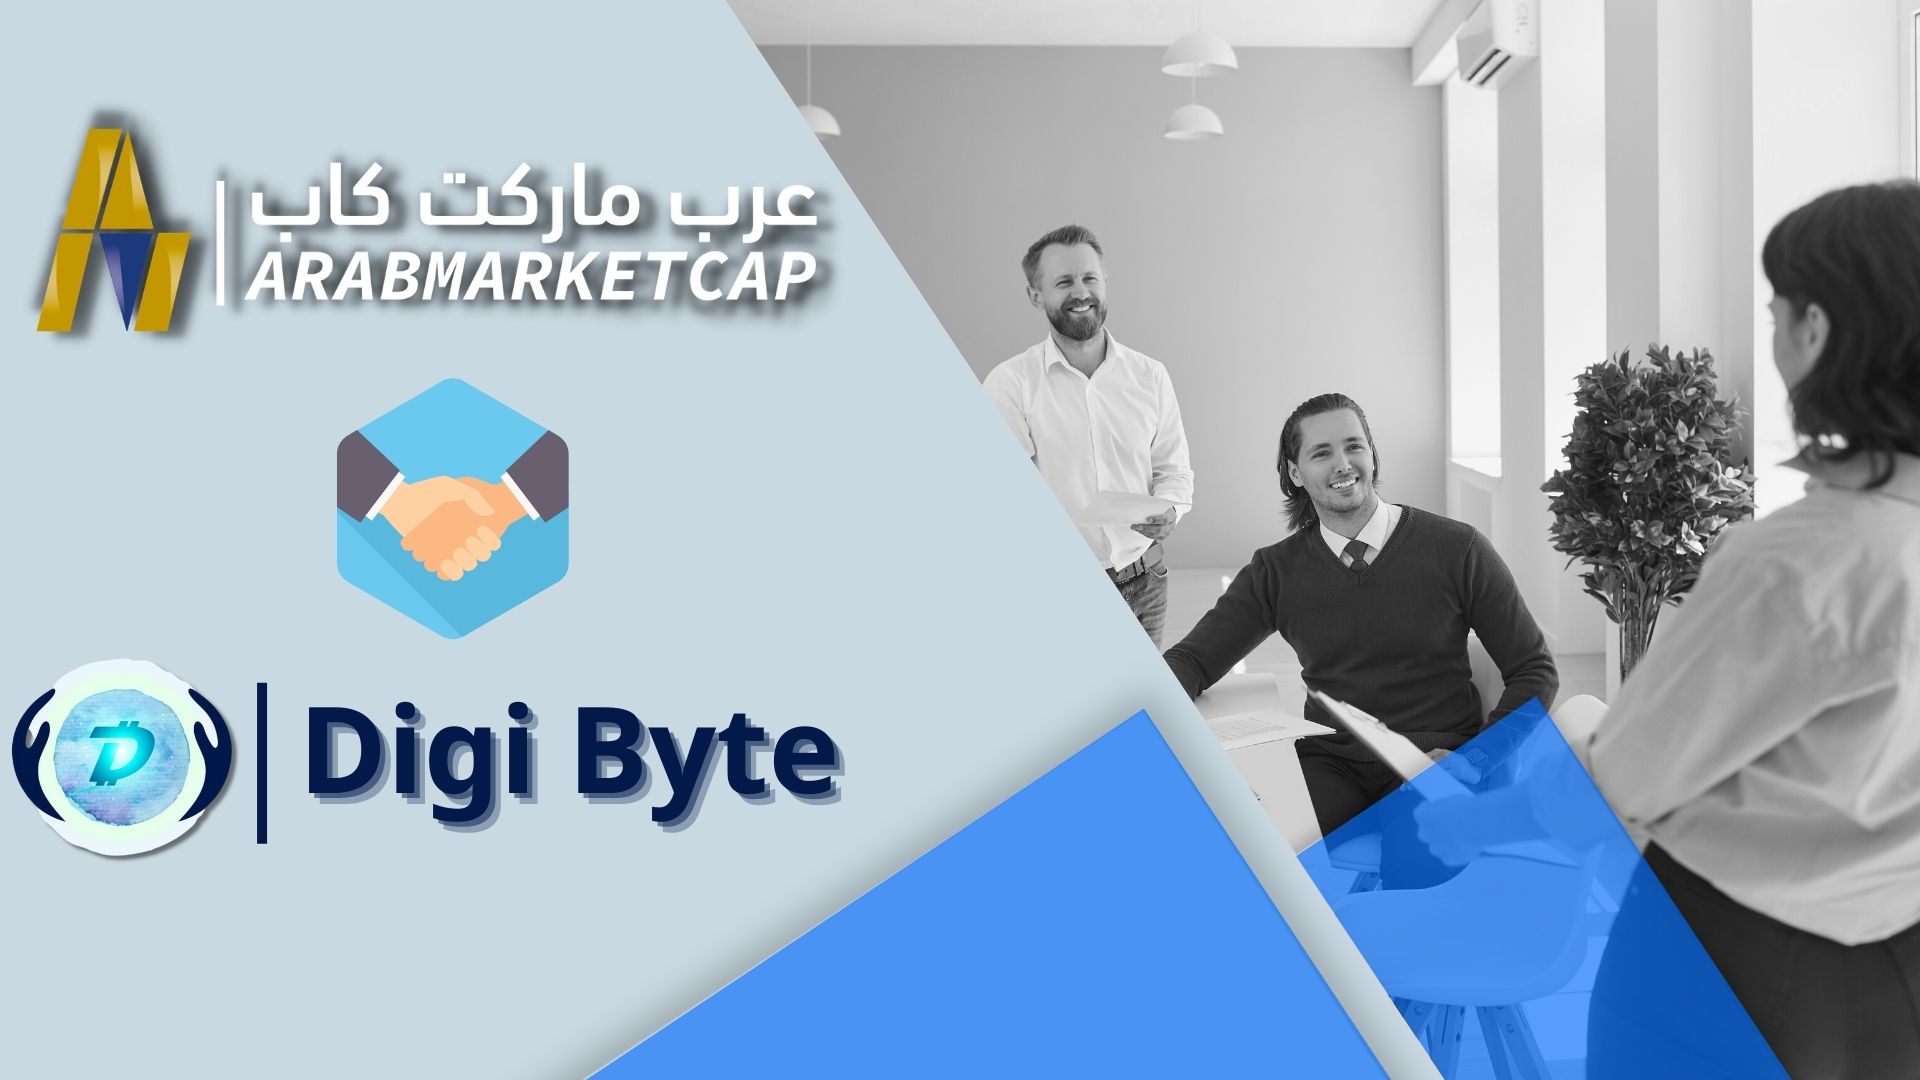 إعلان شراكة: رسميًا.. عرب ماركت كاب سفيرة لـ DigiByte في منطقة الشرق الأوسط وشمال إفريقيا!